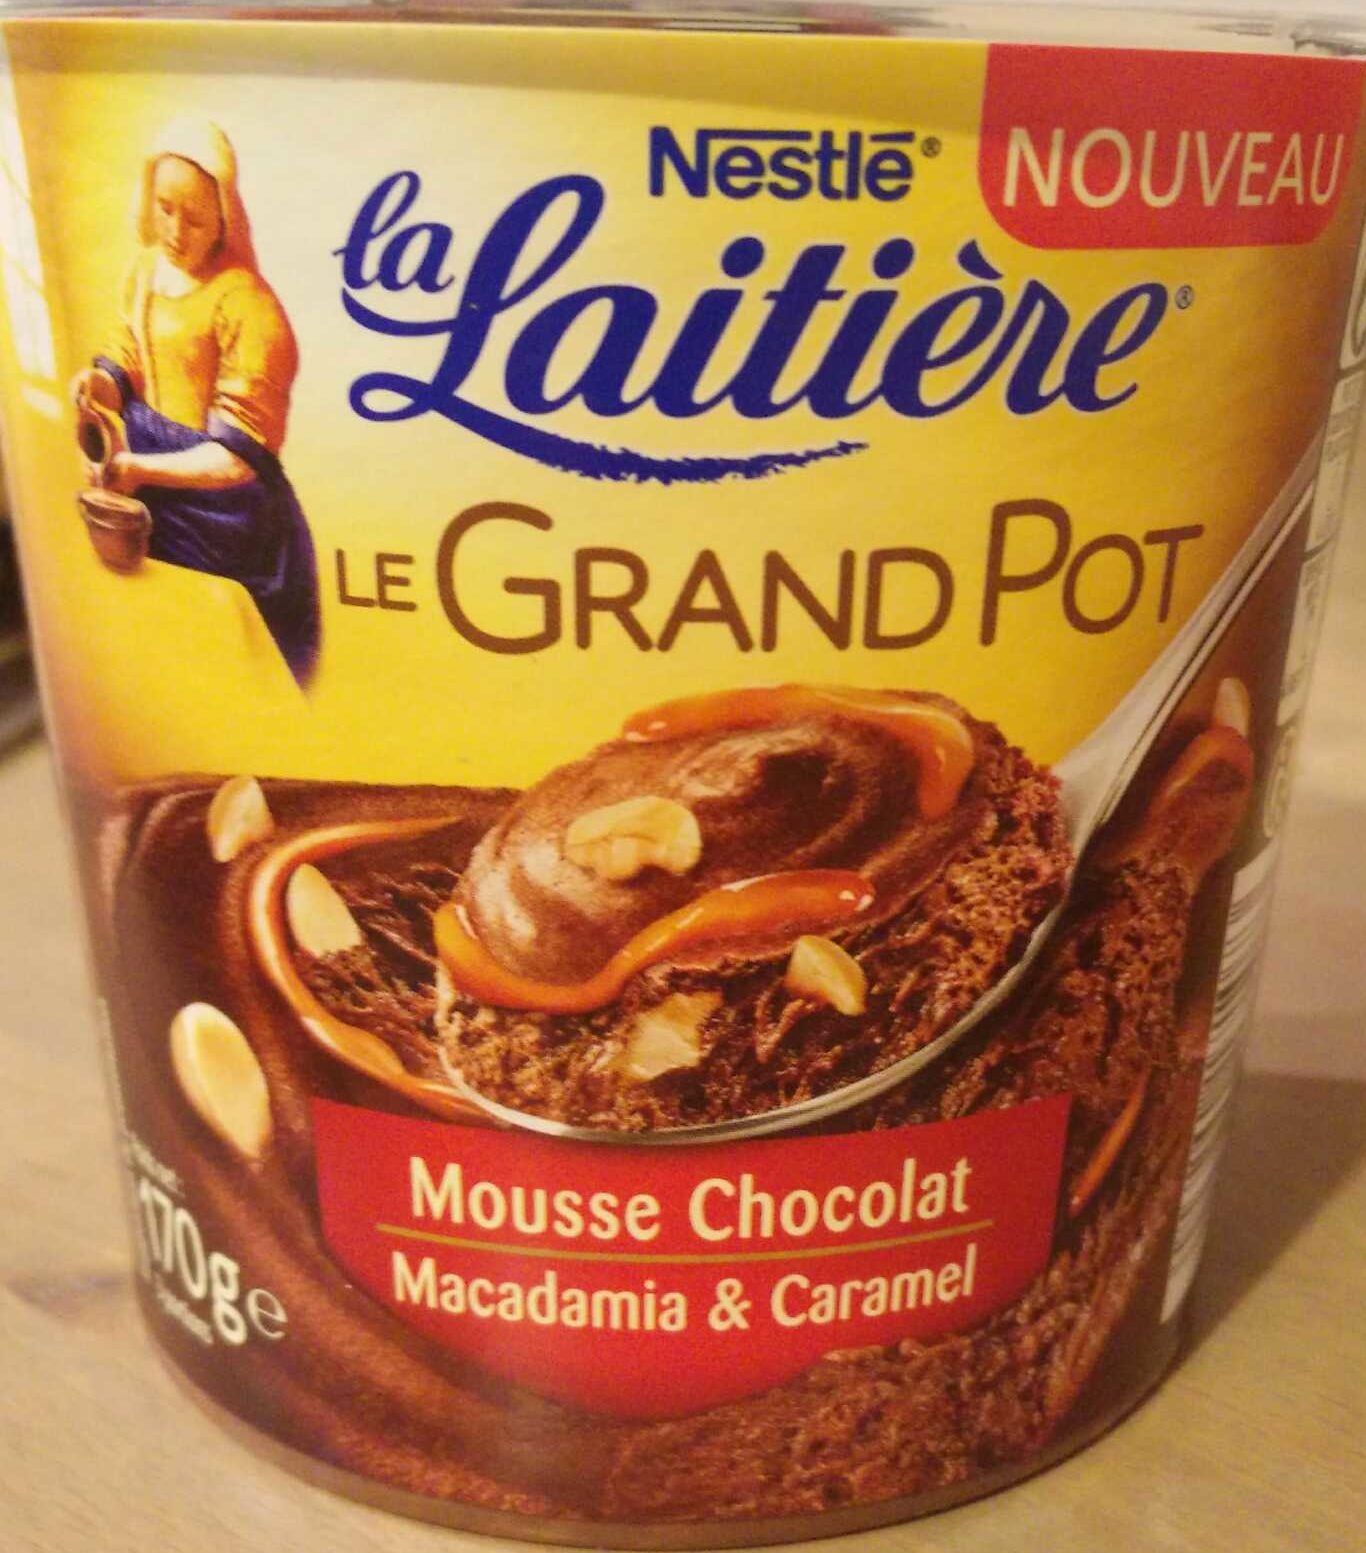 Le Grand Pot Mousse Chocolat, Macadamia & Caramel - Product - fr